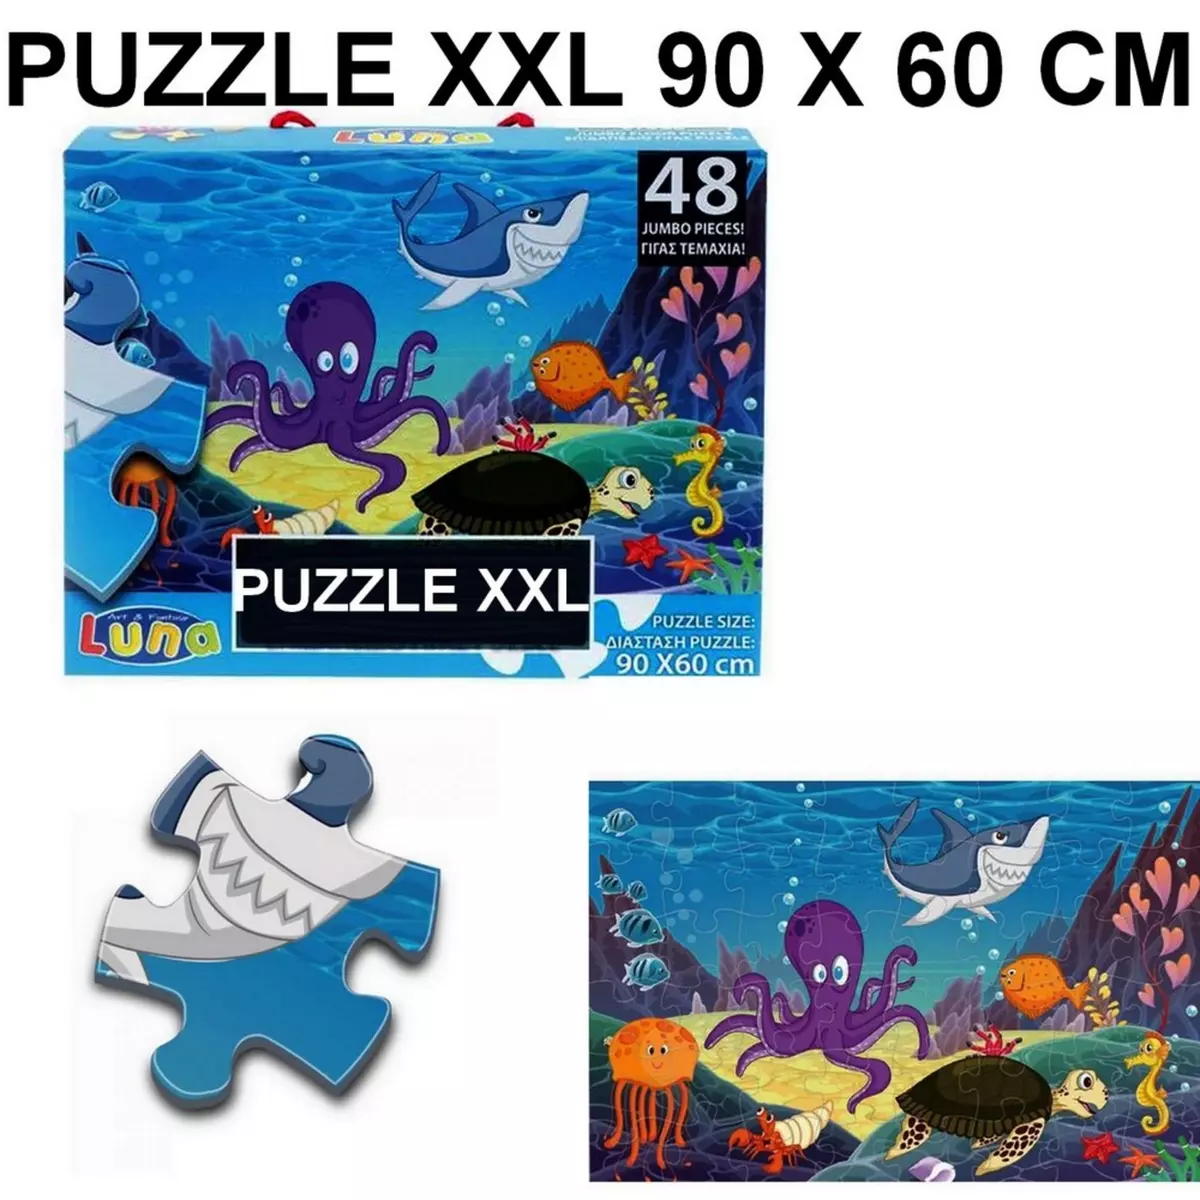  Puzzle geant 48 pieces La Mer poisson pieuvre tortue piece XL 60 x 90 cm